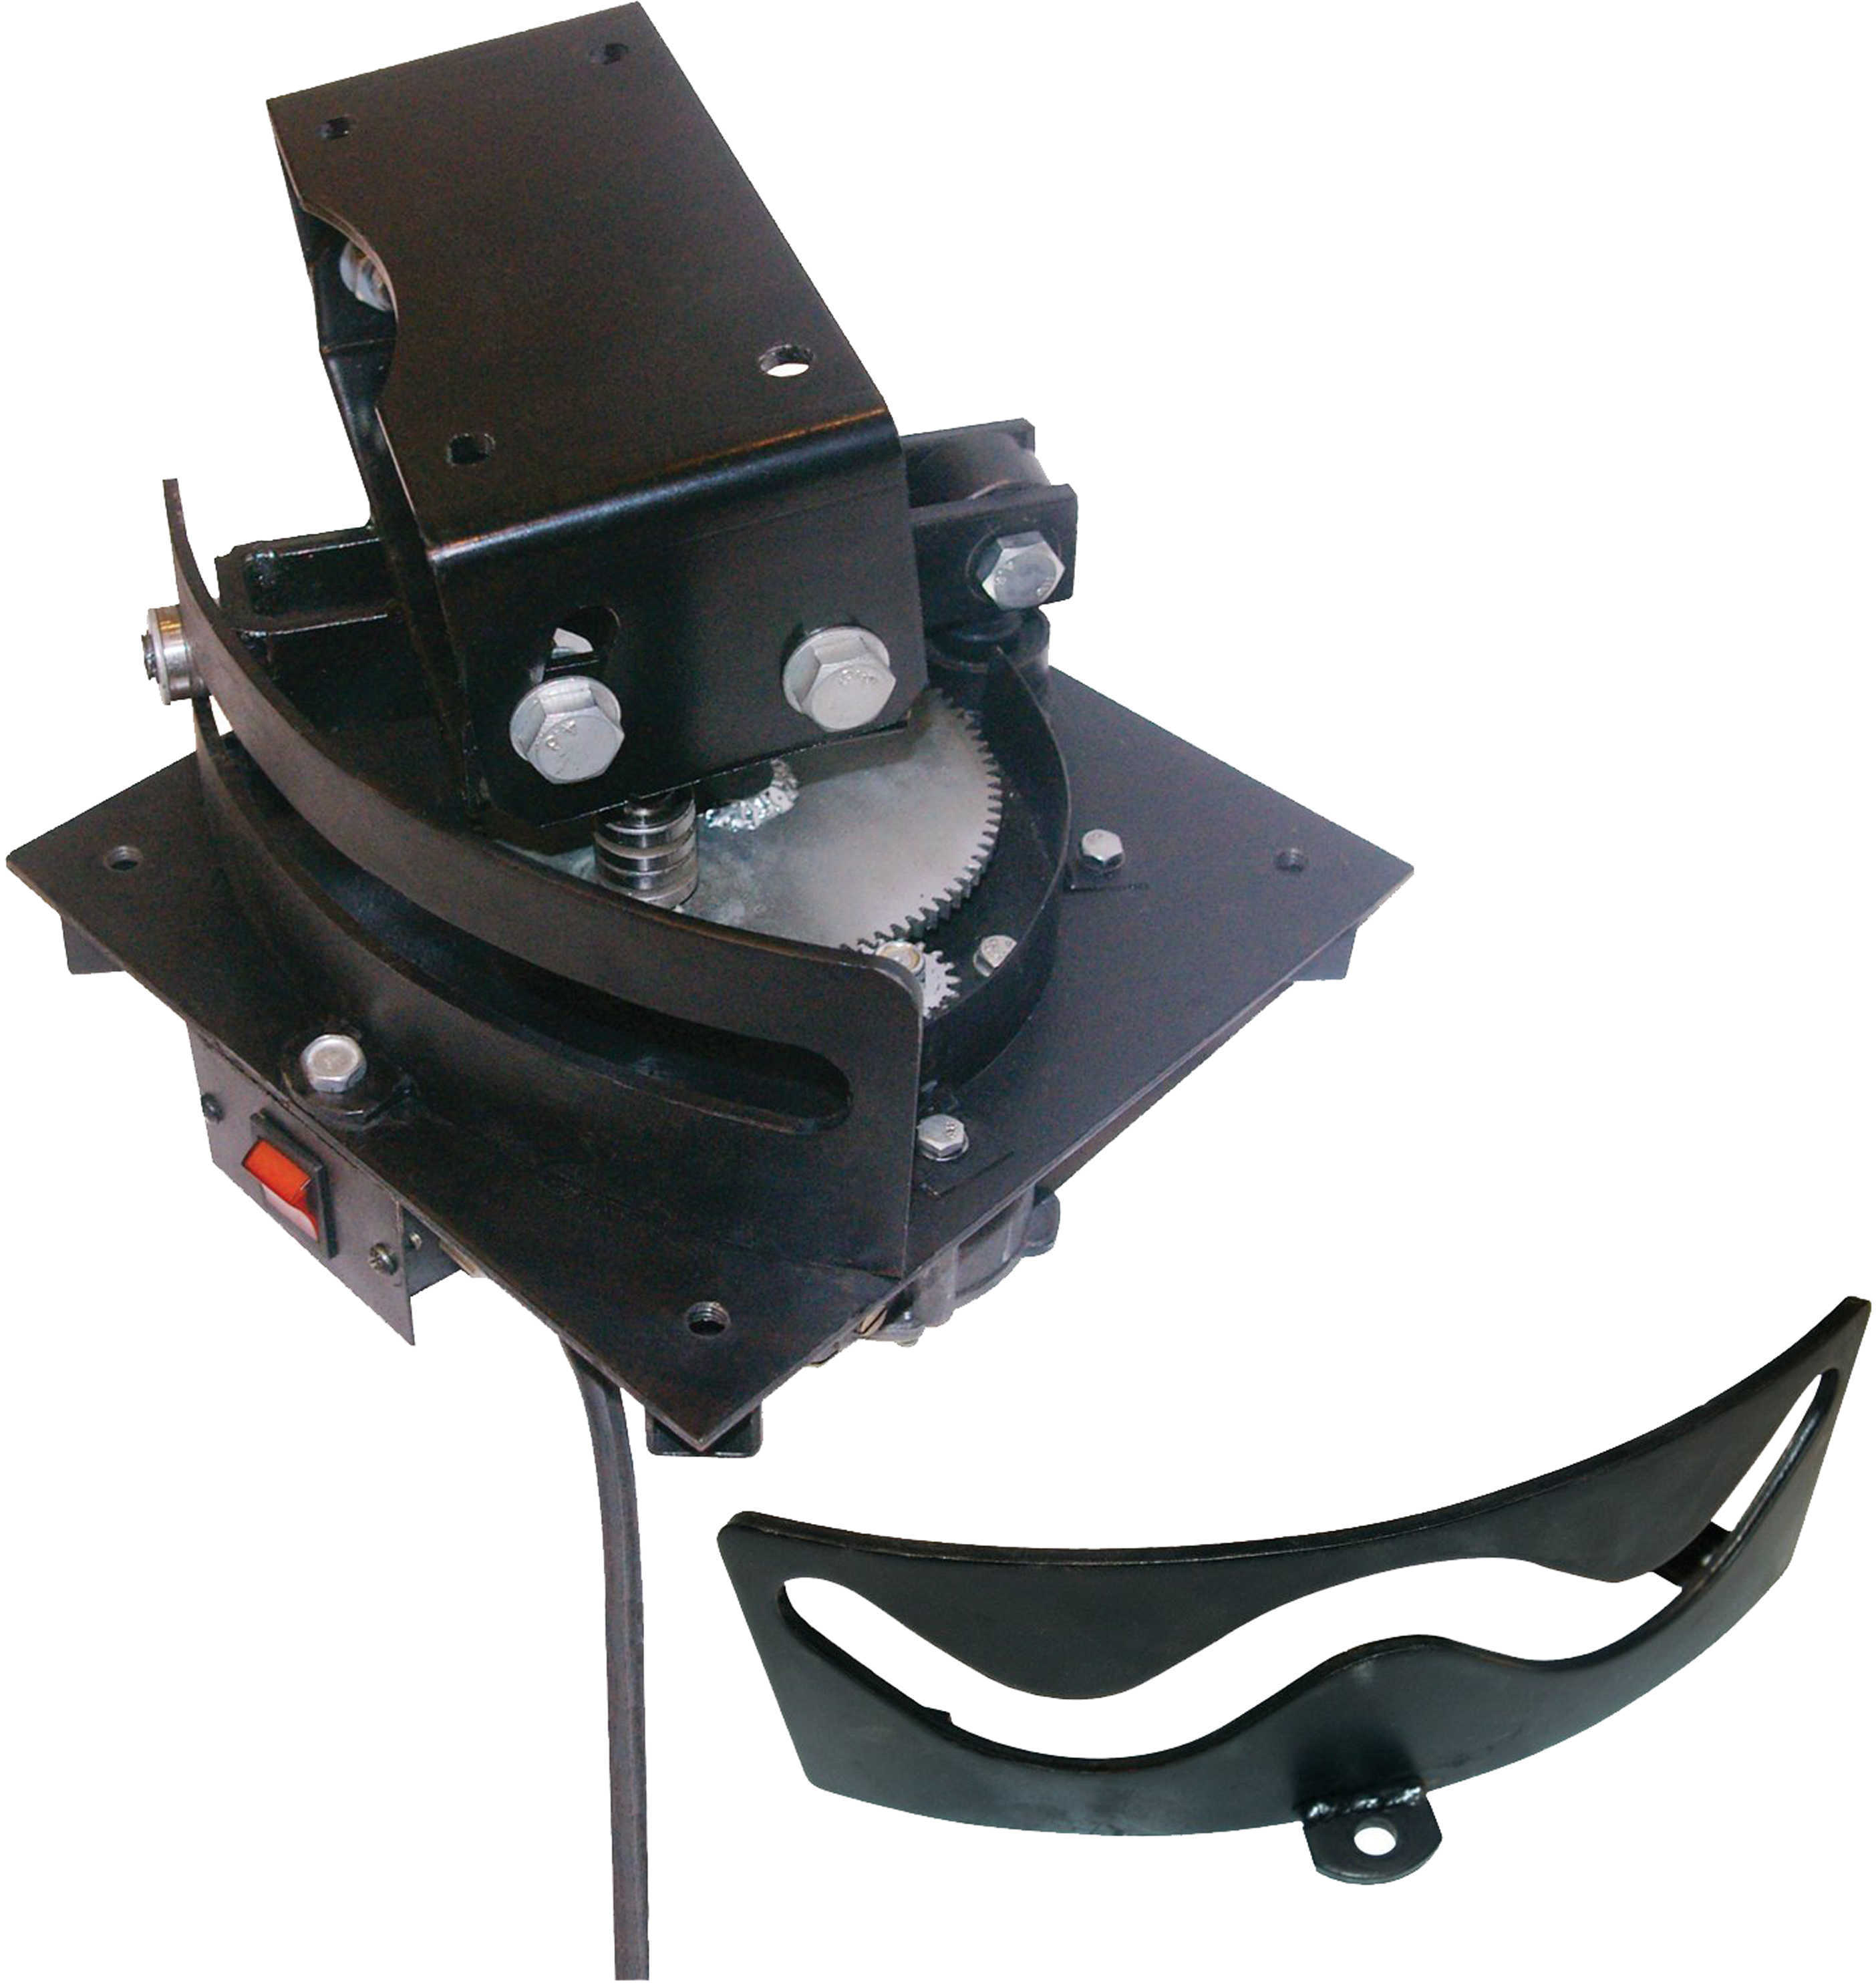 Do-All Traps Auto Adjustable Wobbler Kit (RAV1 & FP25)